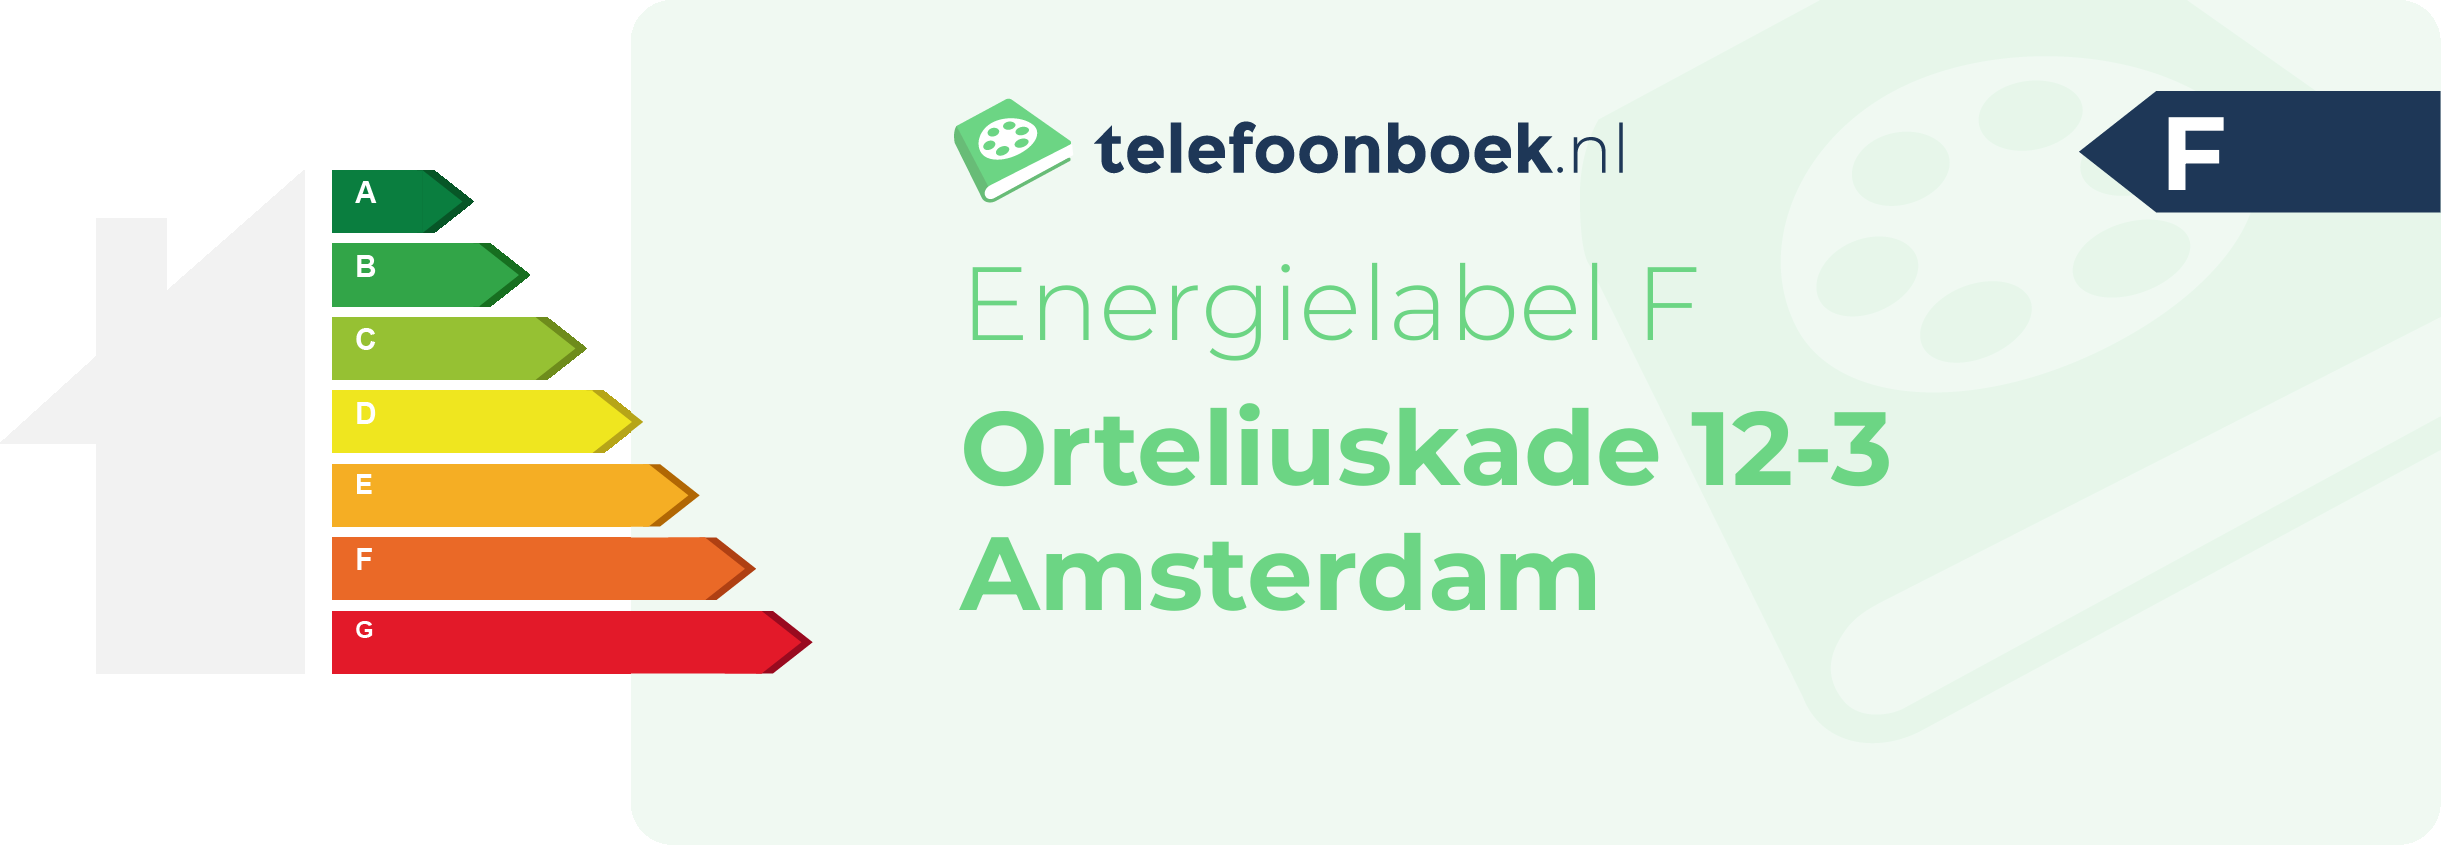 Energielabel Orteliuskade 12-3 Amsterdam